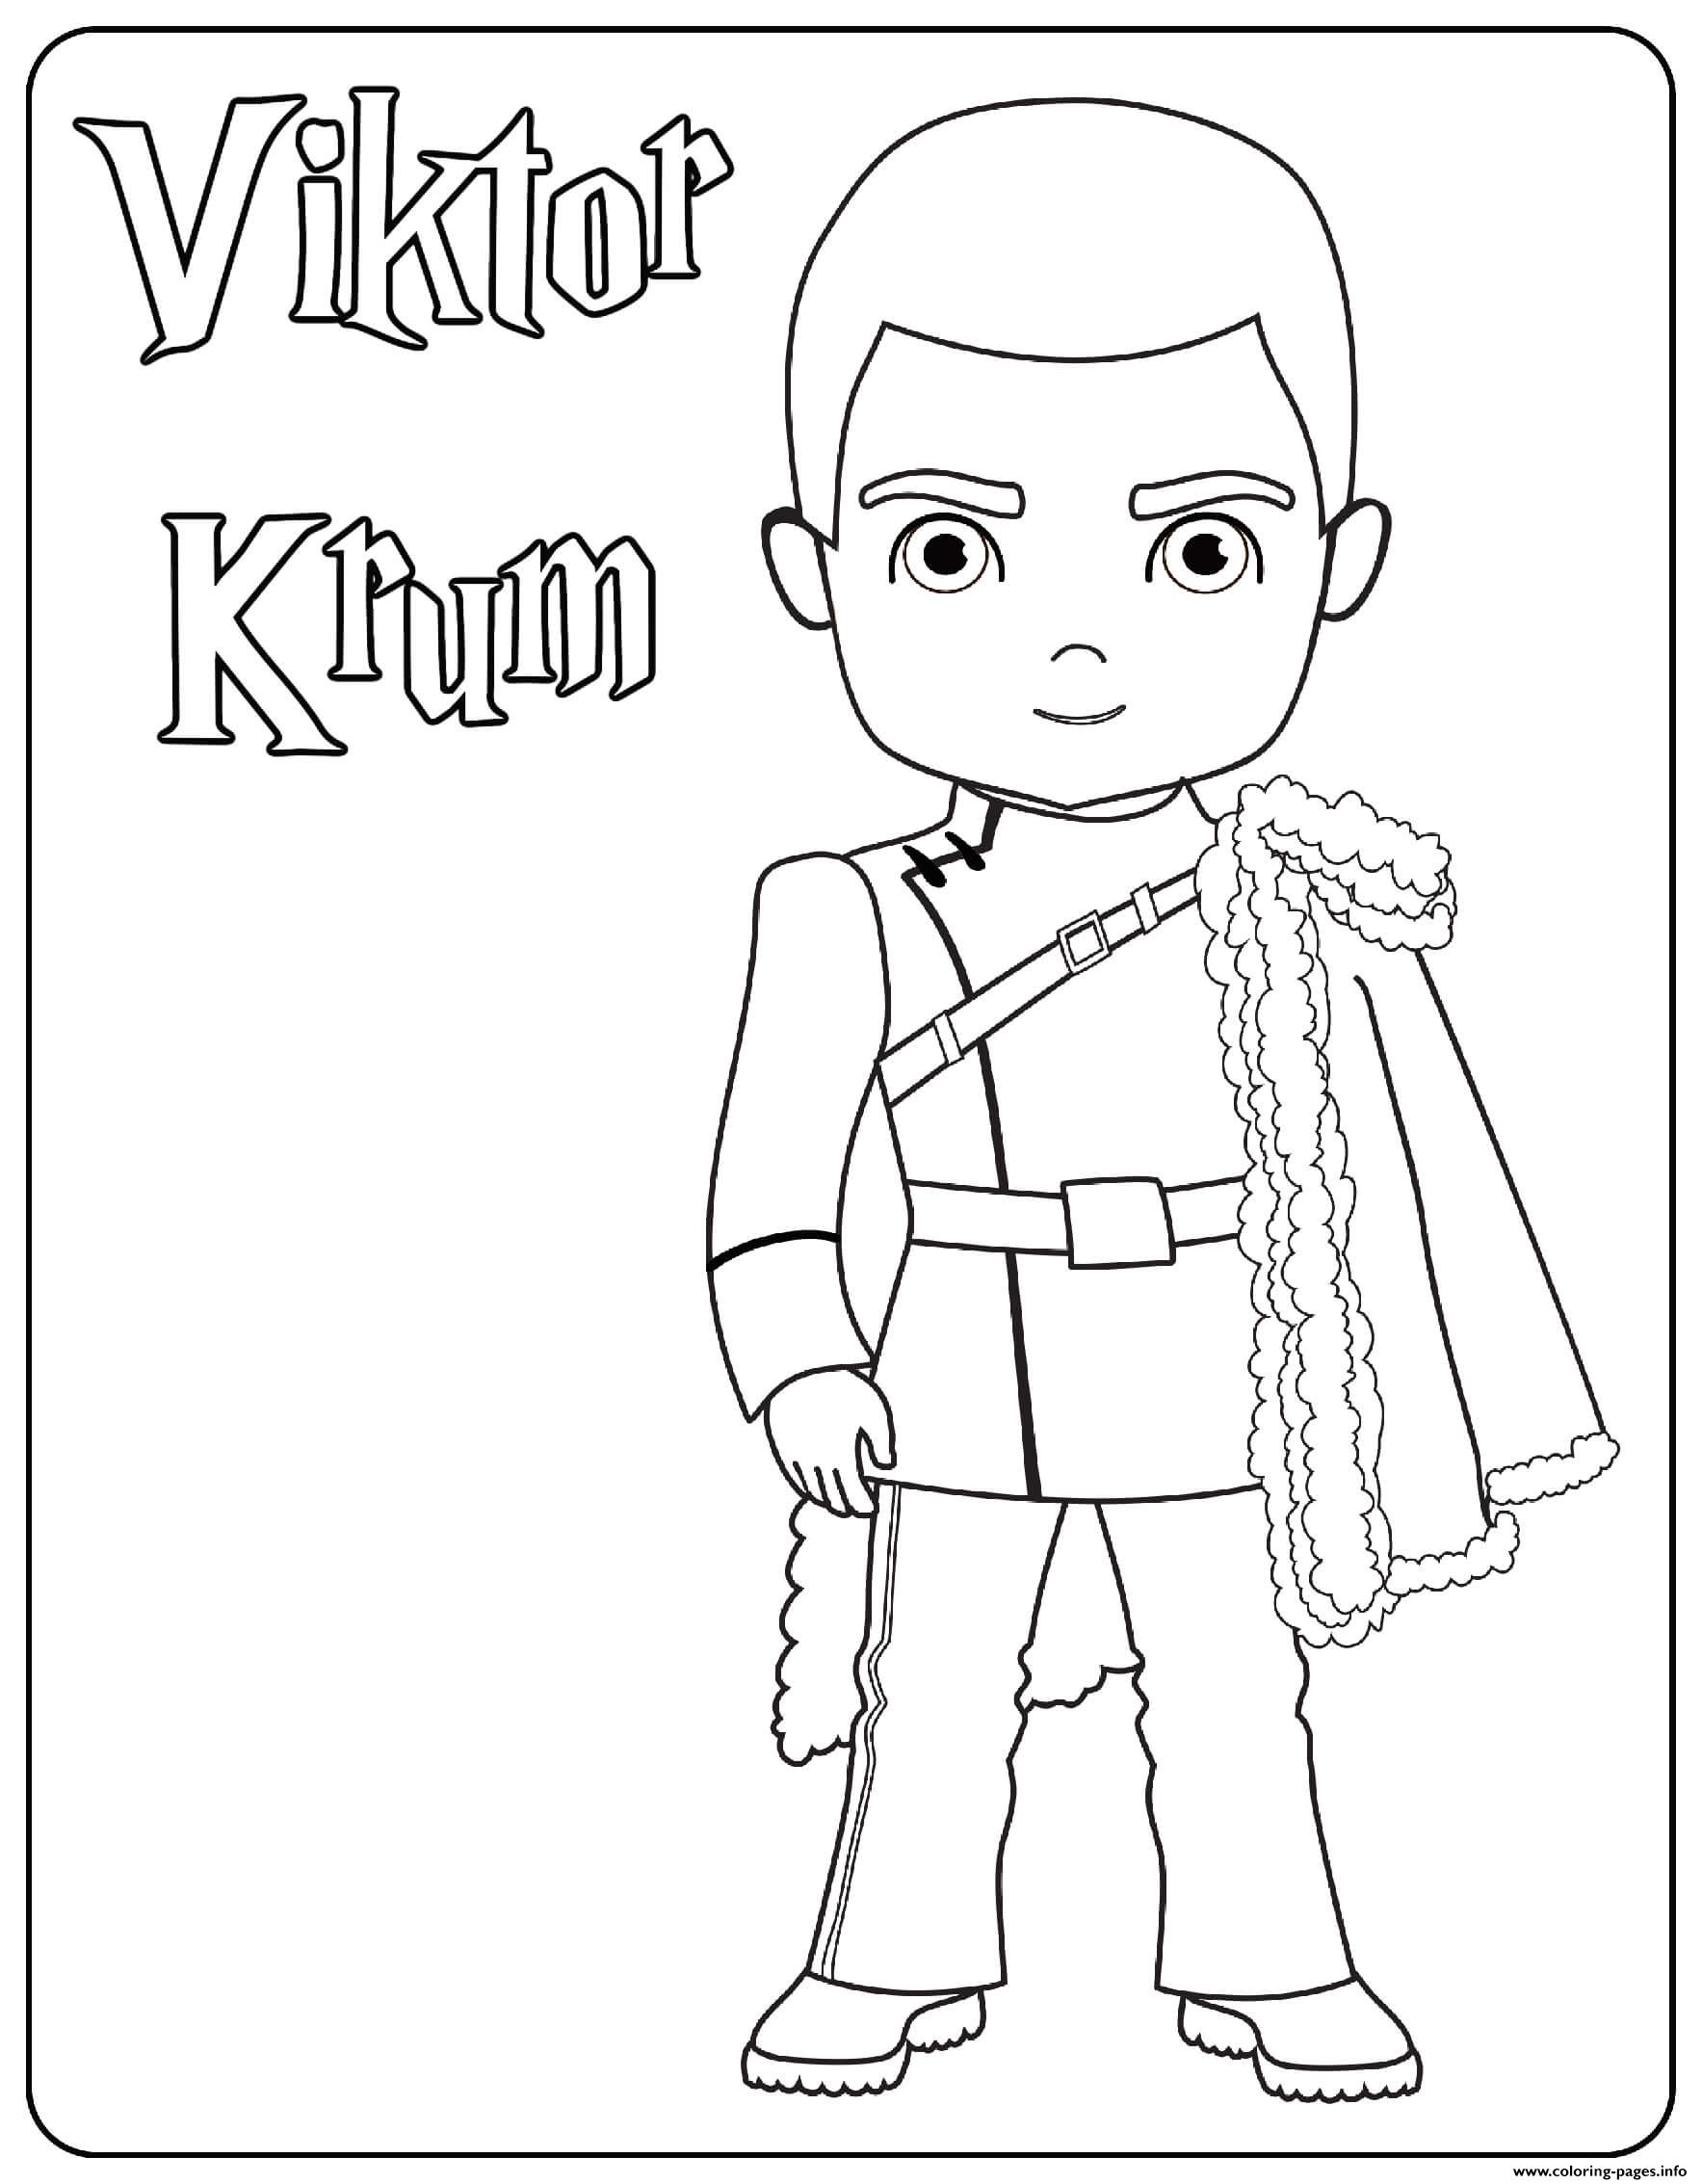 Viktor Krum coloring